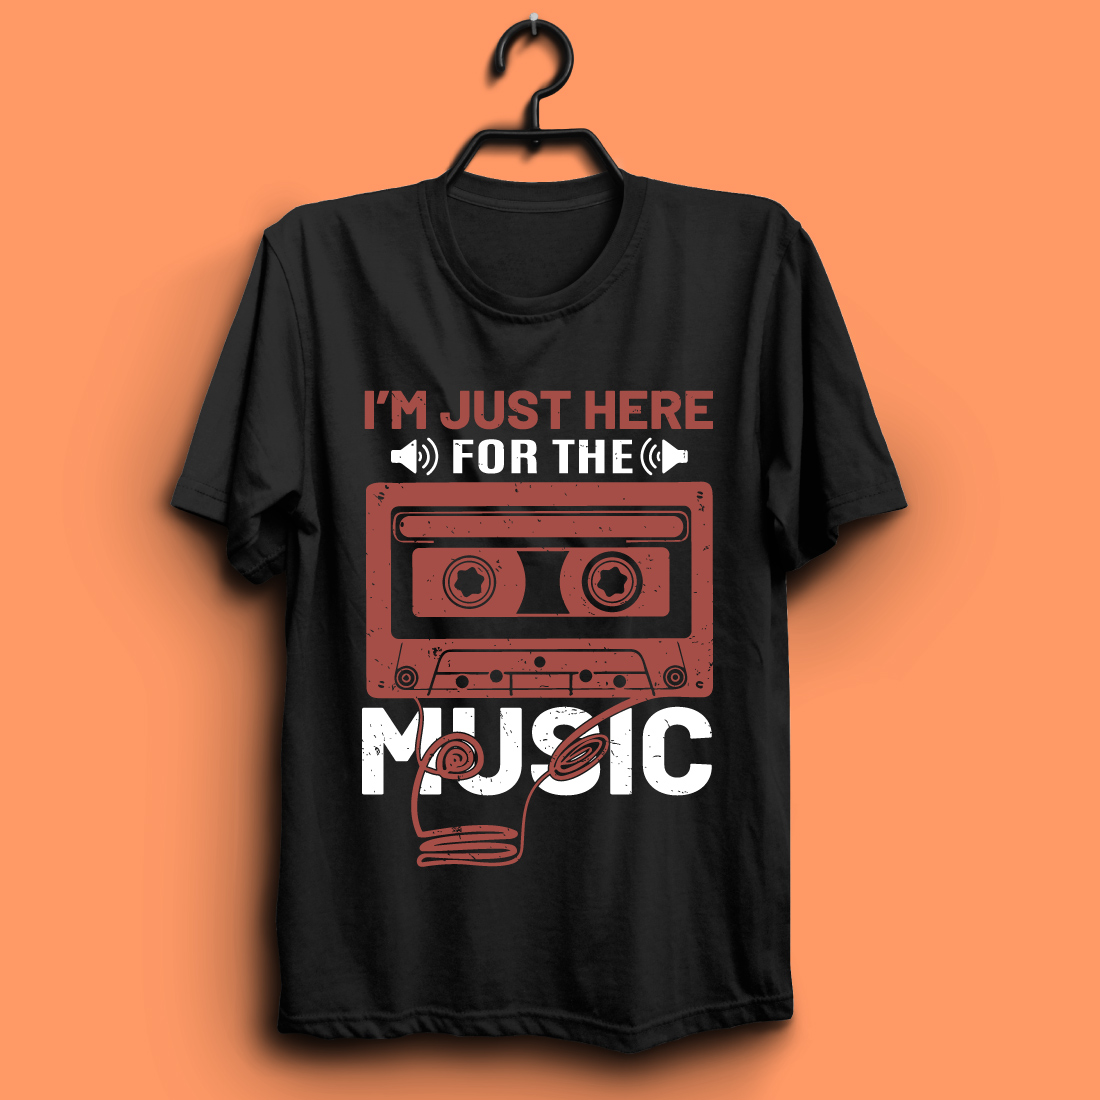 music t shirt design05 556